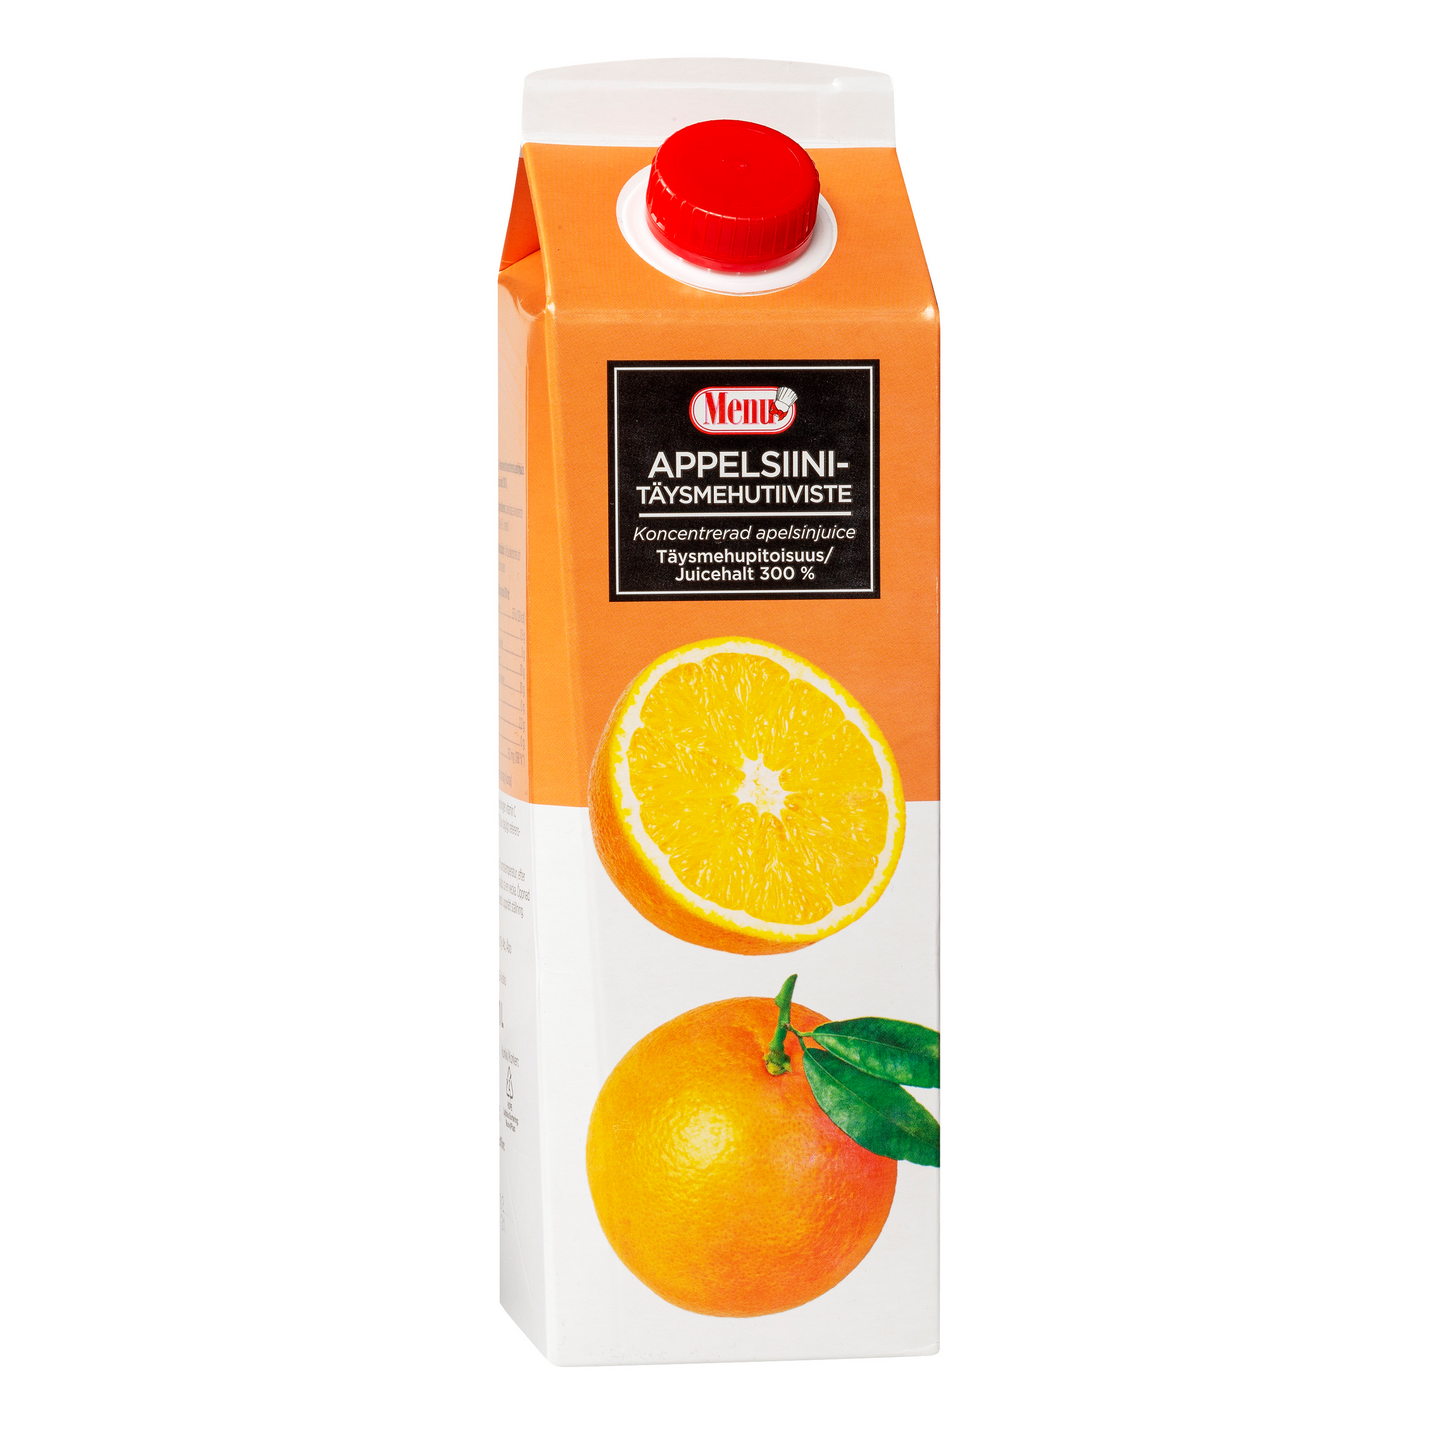 Menu appelsiinitäysmehutiiviste 1l 300% 1+2